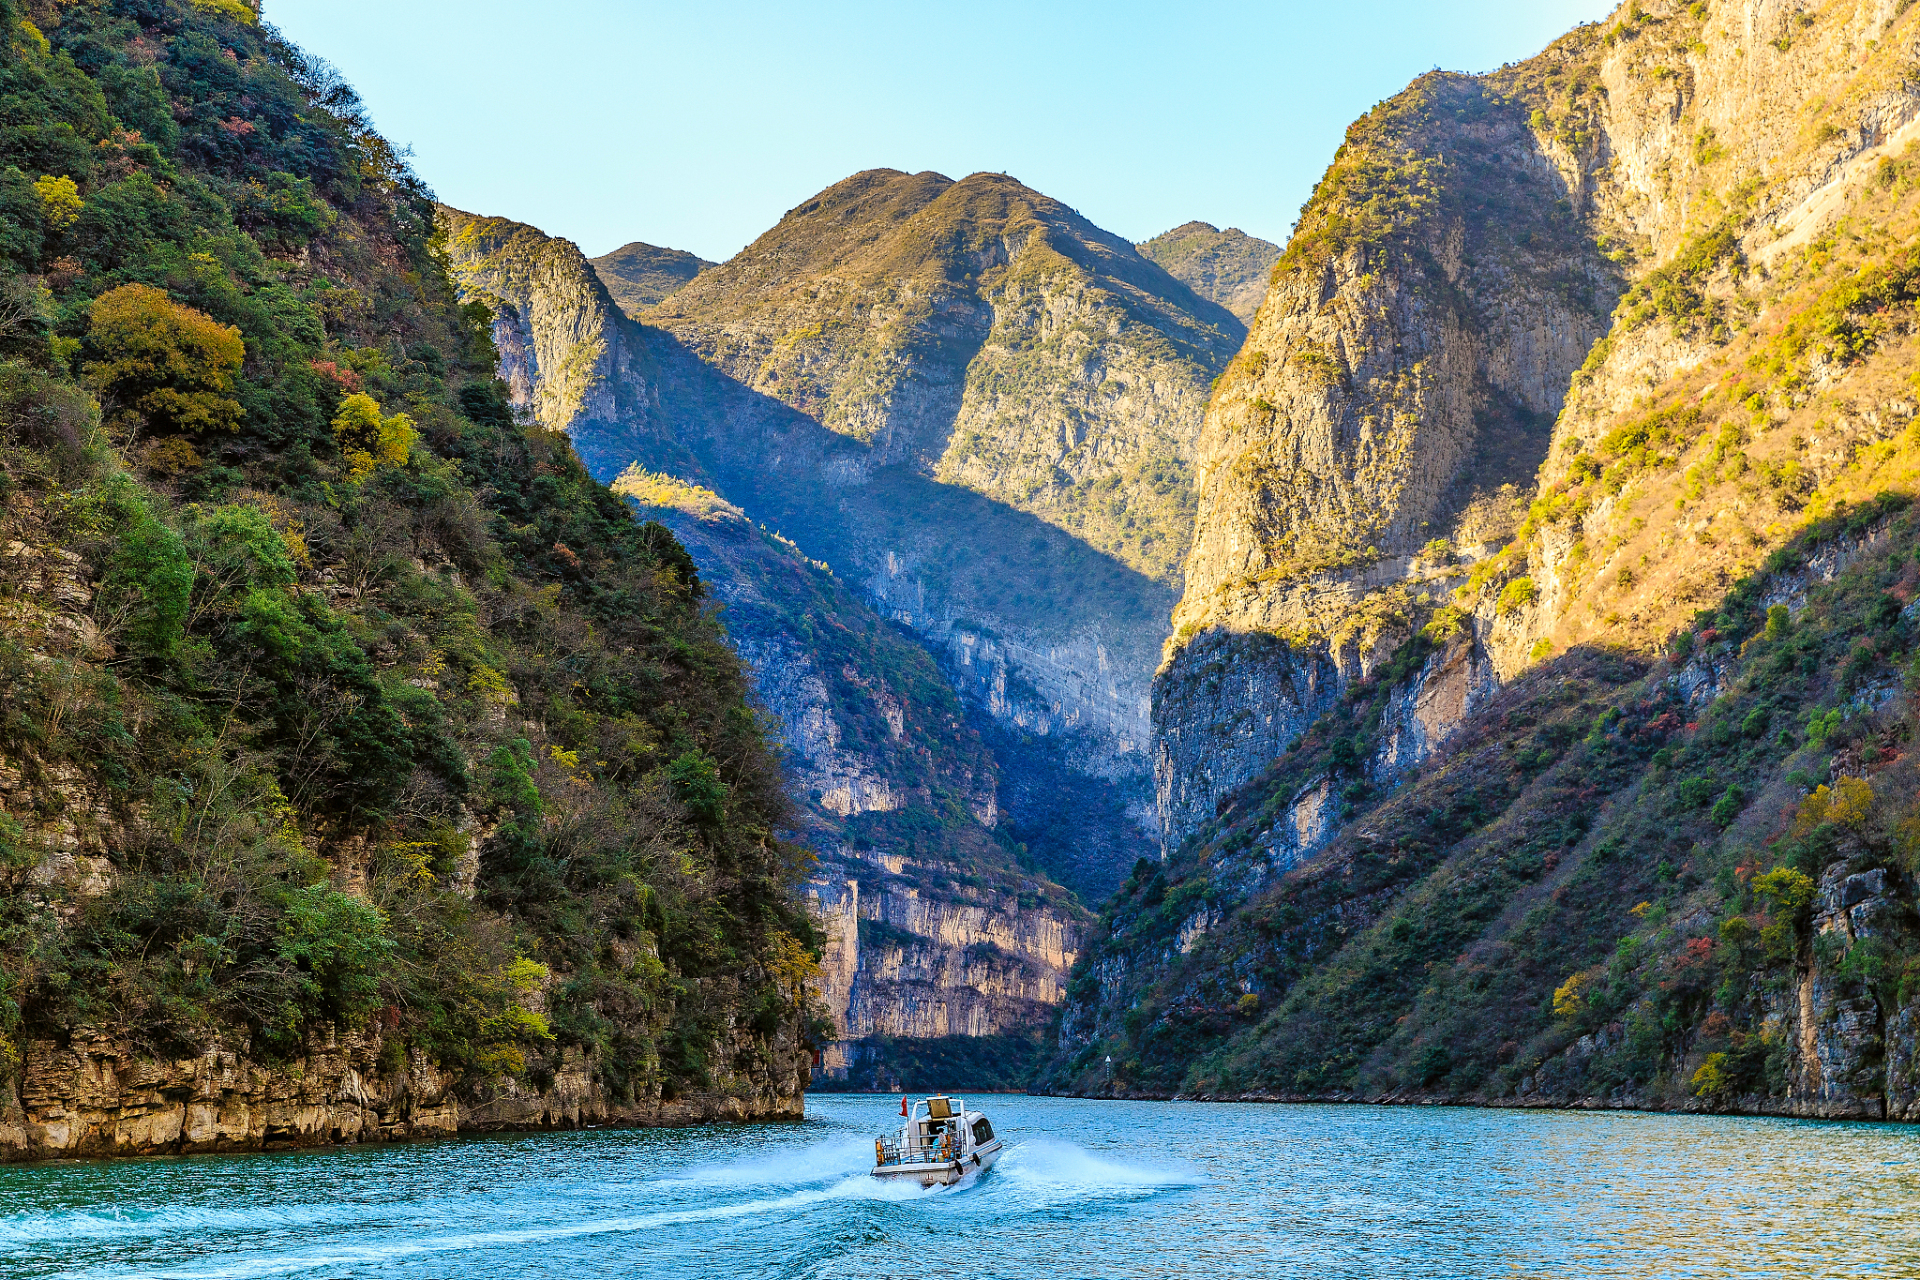 游览小三峡,你可以乘坐游轮,欣赏沿途的红叶和壮丽的山峡风景